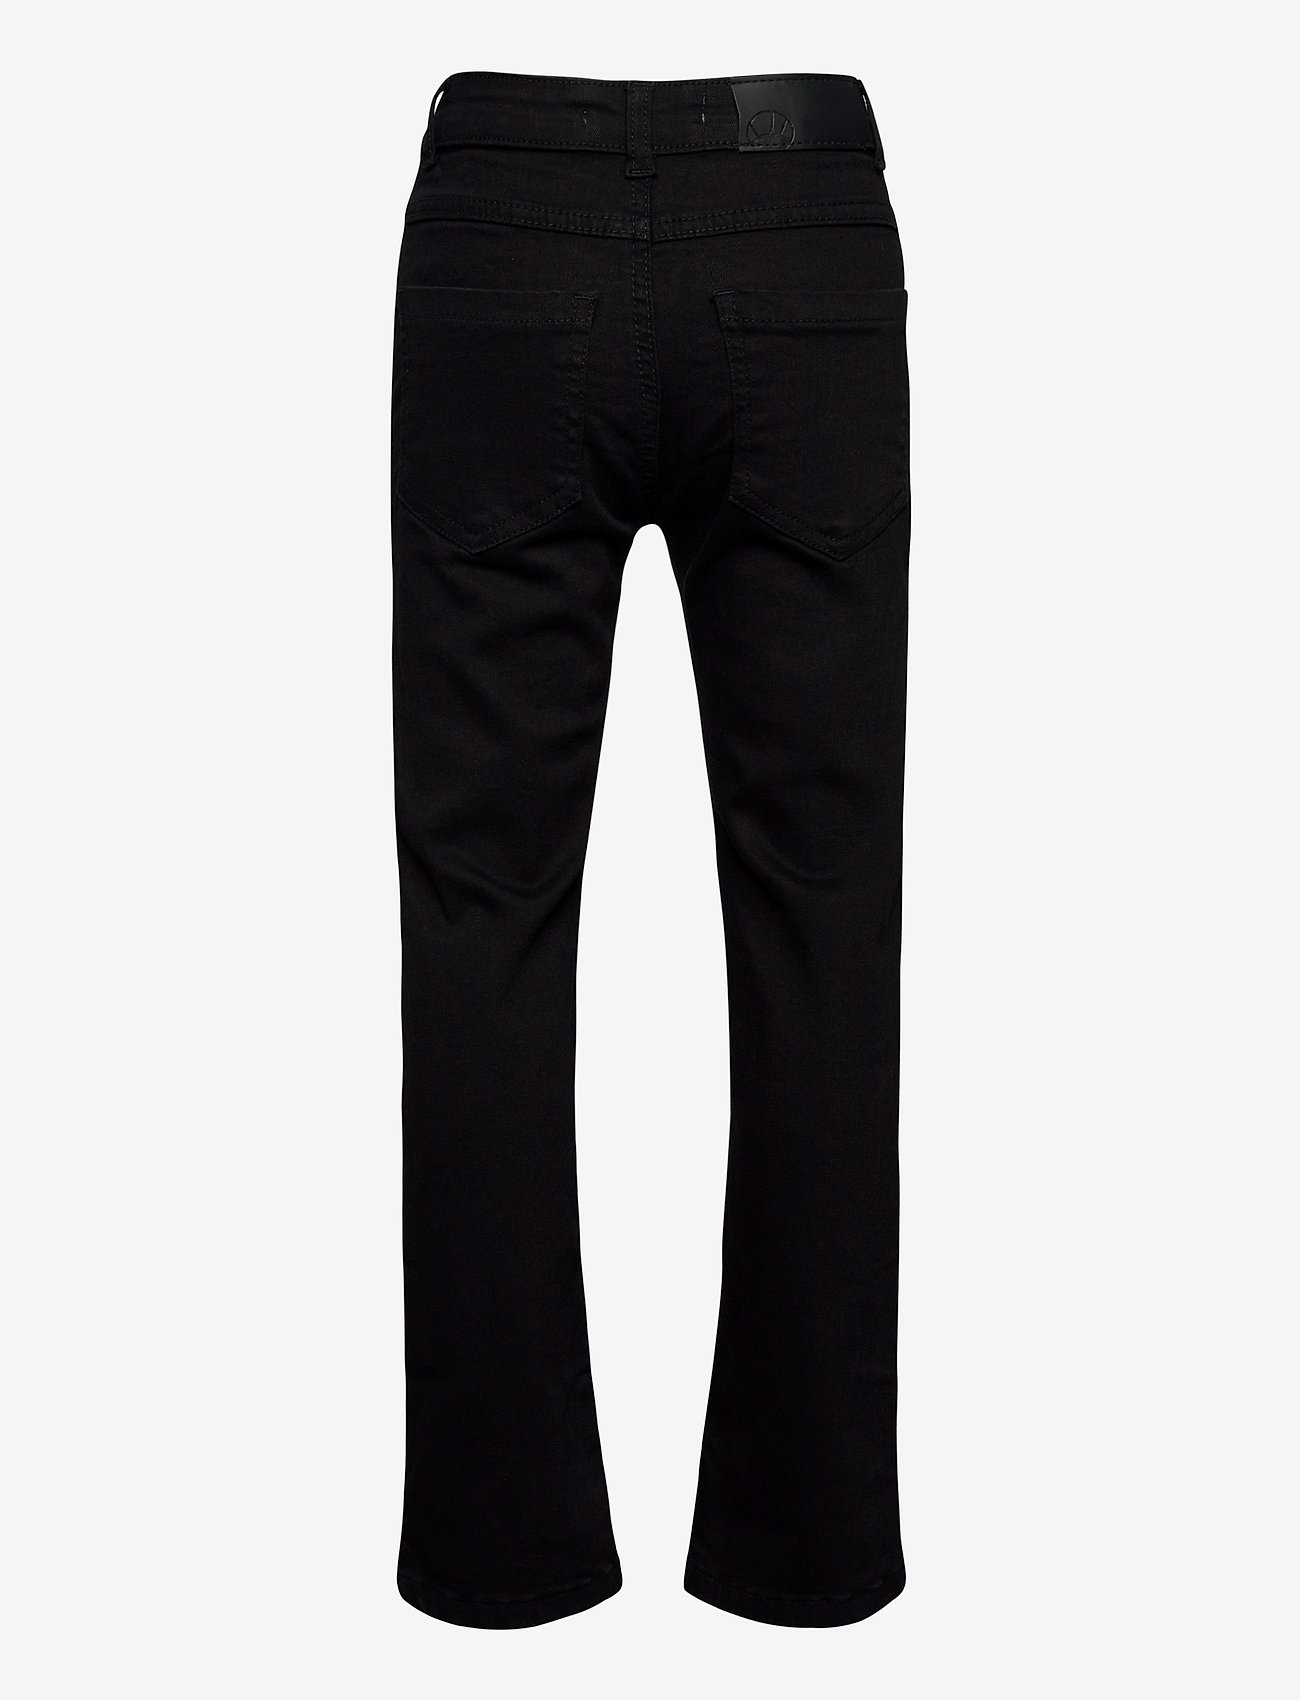 The New - STOCKHOLM REGULAR JEANS COL. BLACK WASH 990 - regular jeans - 990 black wash - 1